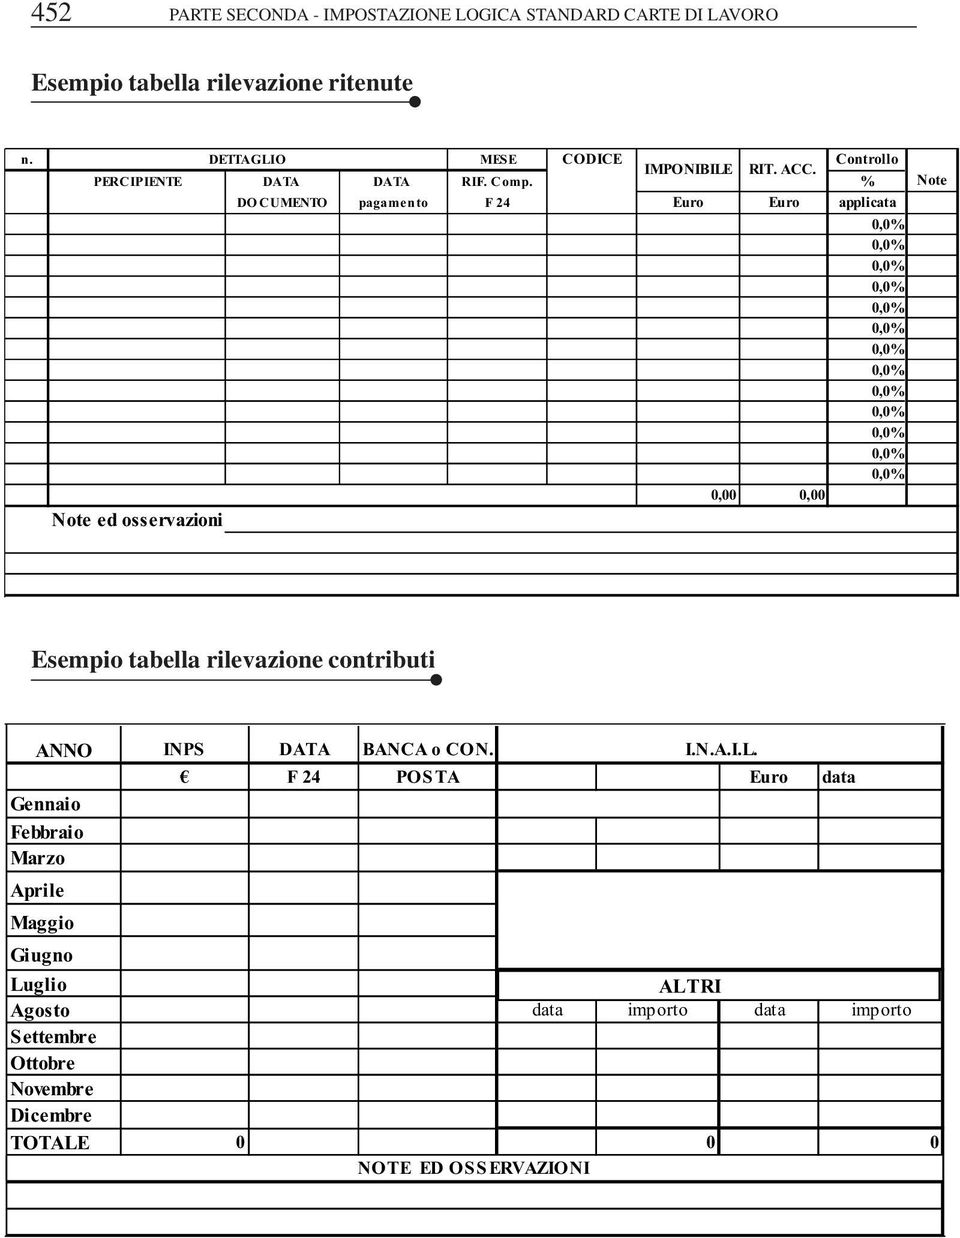 % Note DOCUMENTO pagamento F 24 Euro Euro applicata 0,00 0,00 Note ed osservazioni Esempio tabella rilevazione contributi ANNO INPS